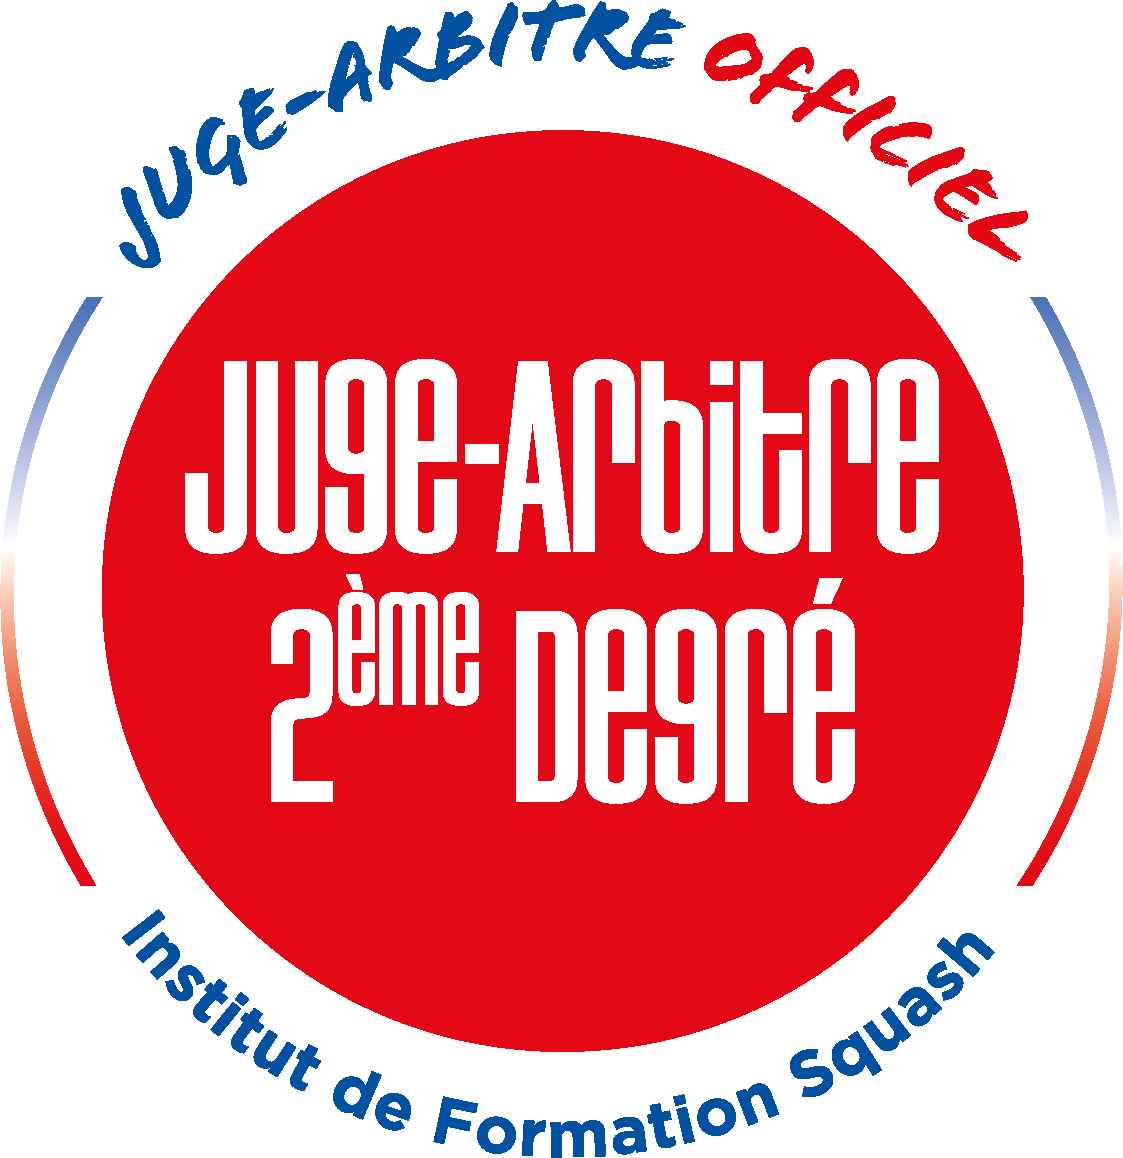 Juge-Arbitre 2e degré